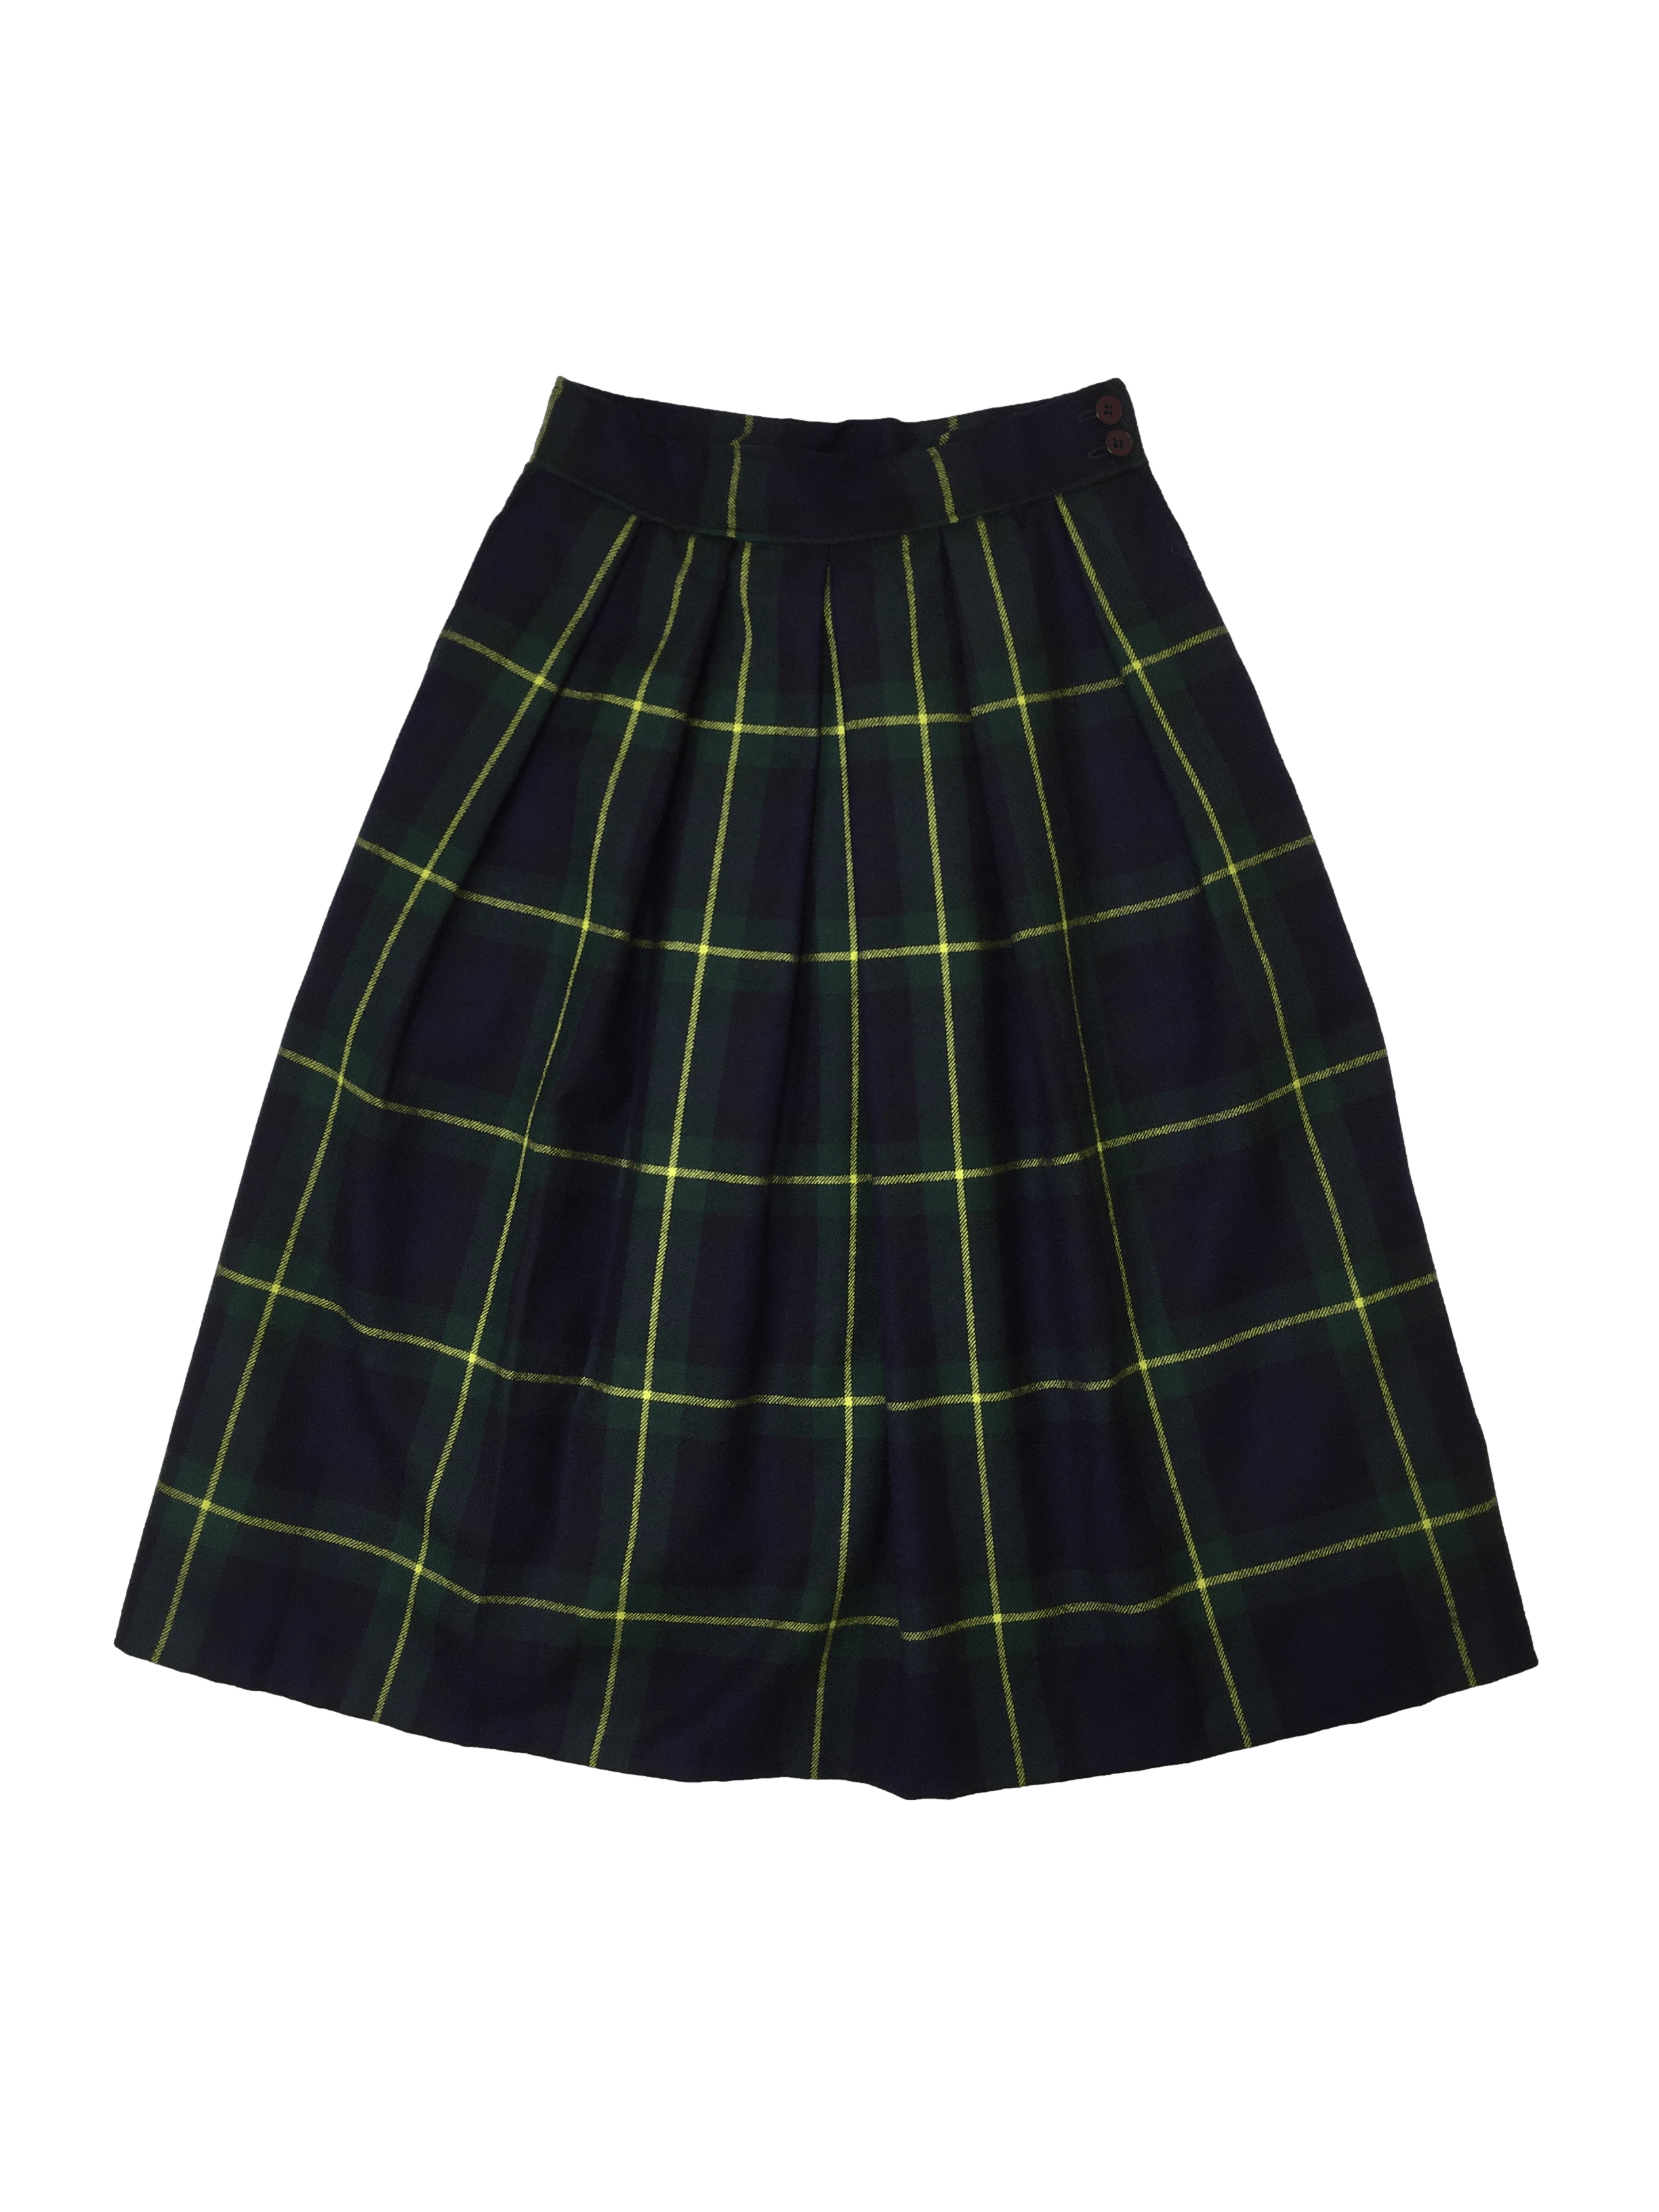 Falda vintage a cuadros escoceses en verde, azul y amarillo. 100% lana con bolsillos laterales. cintura 66 cm y largo 70 cm. 